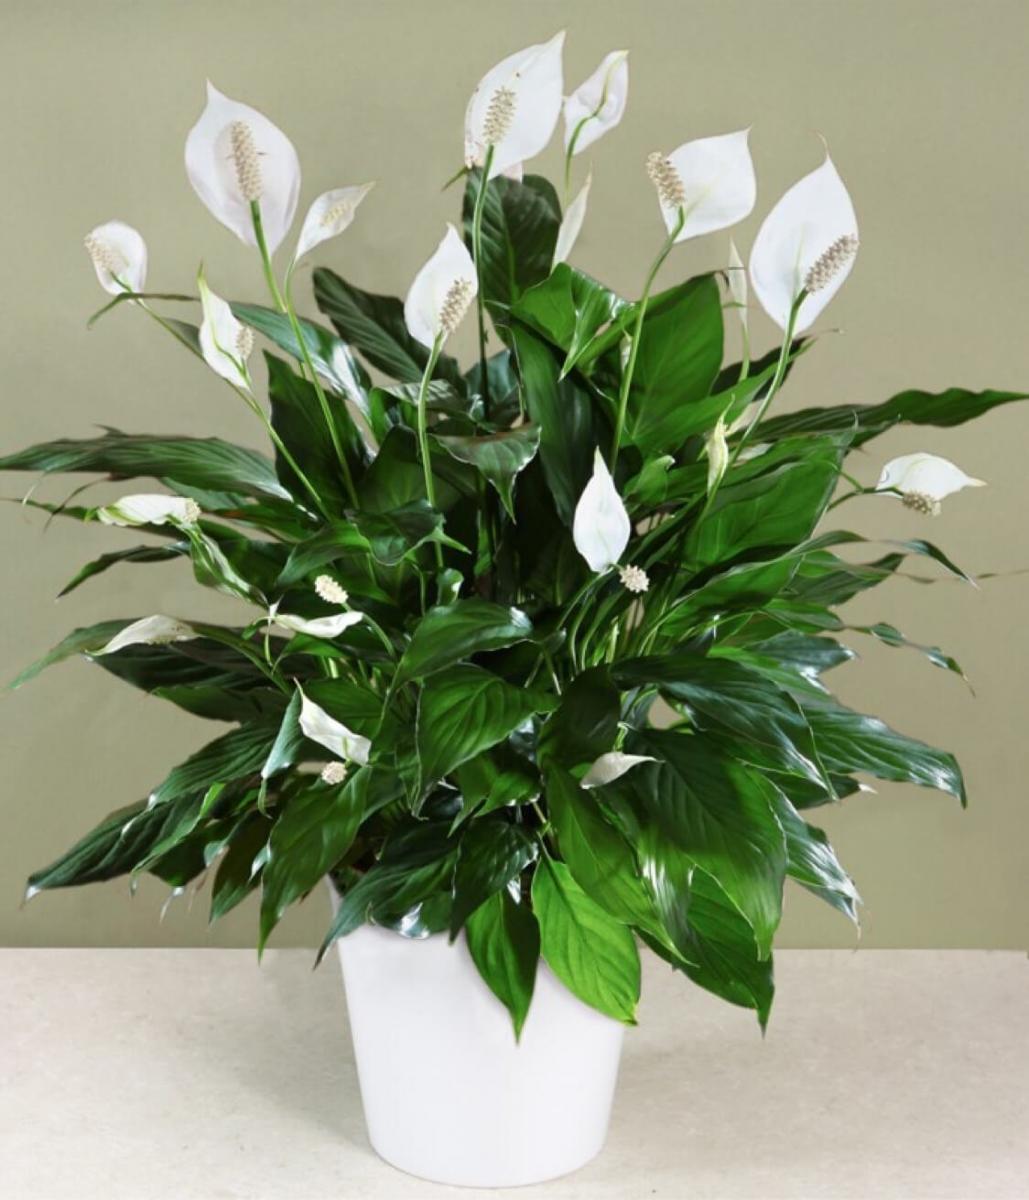 (Những bông hoa trắng muốt của Lan Ý là biểu hiện của tình yêu trong sáng, thủy chung)